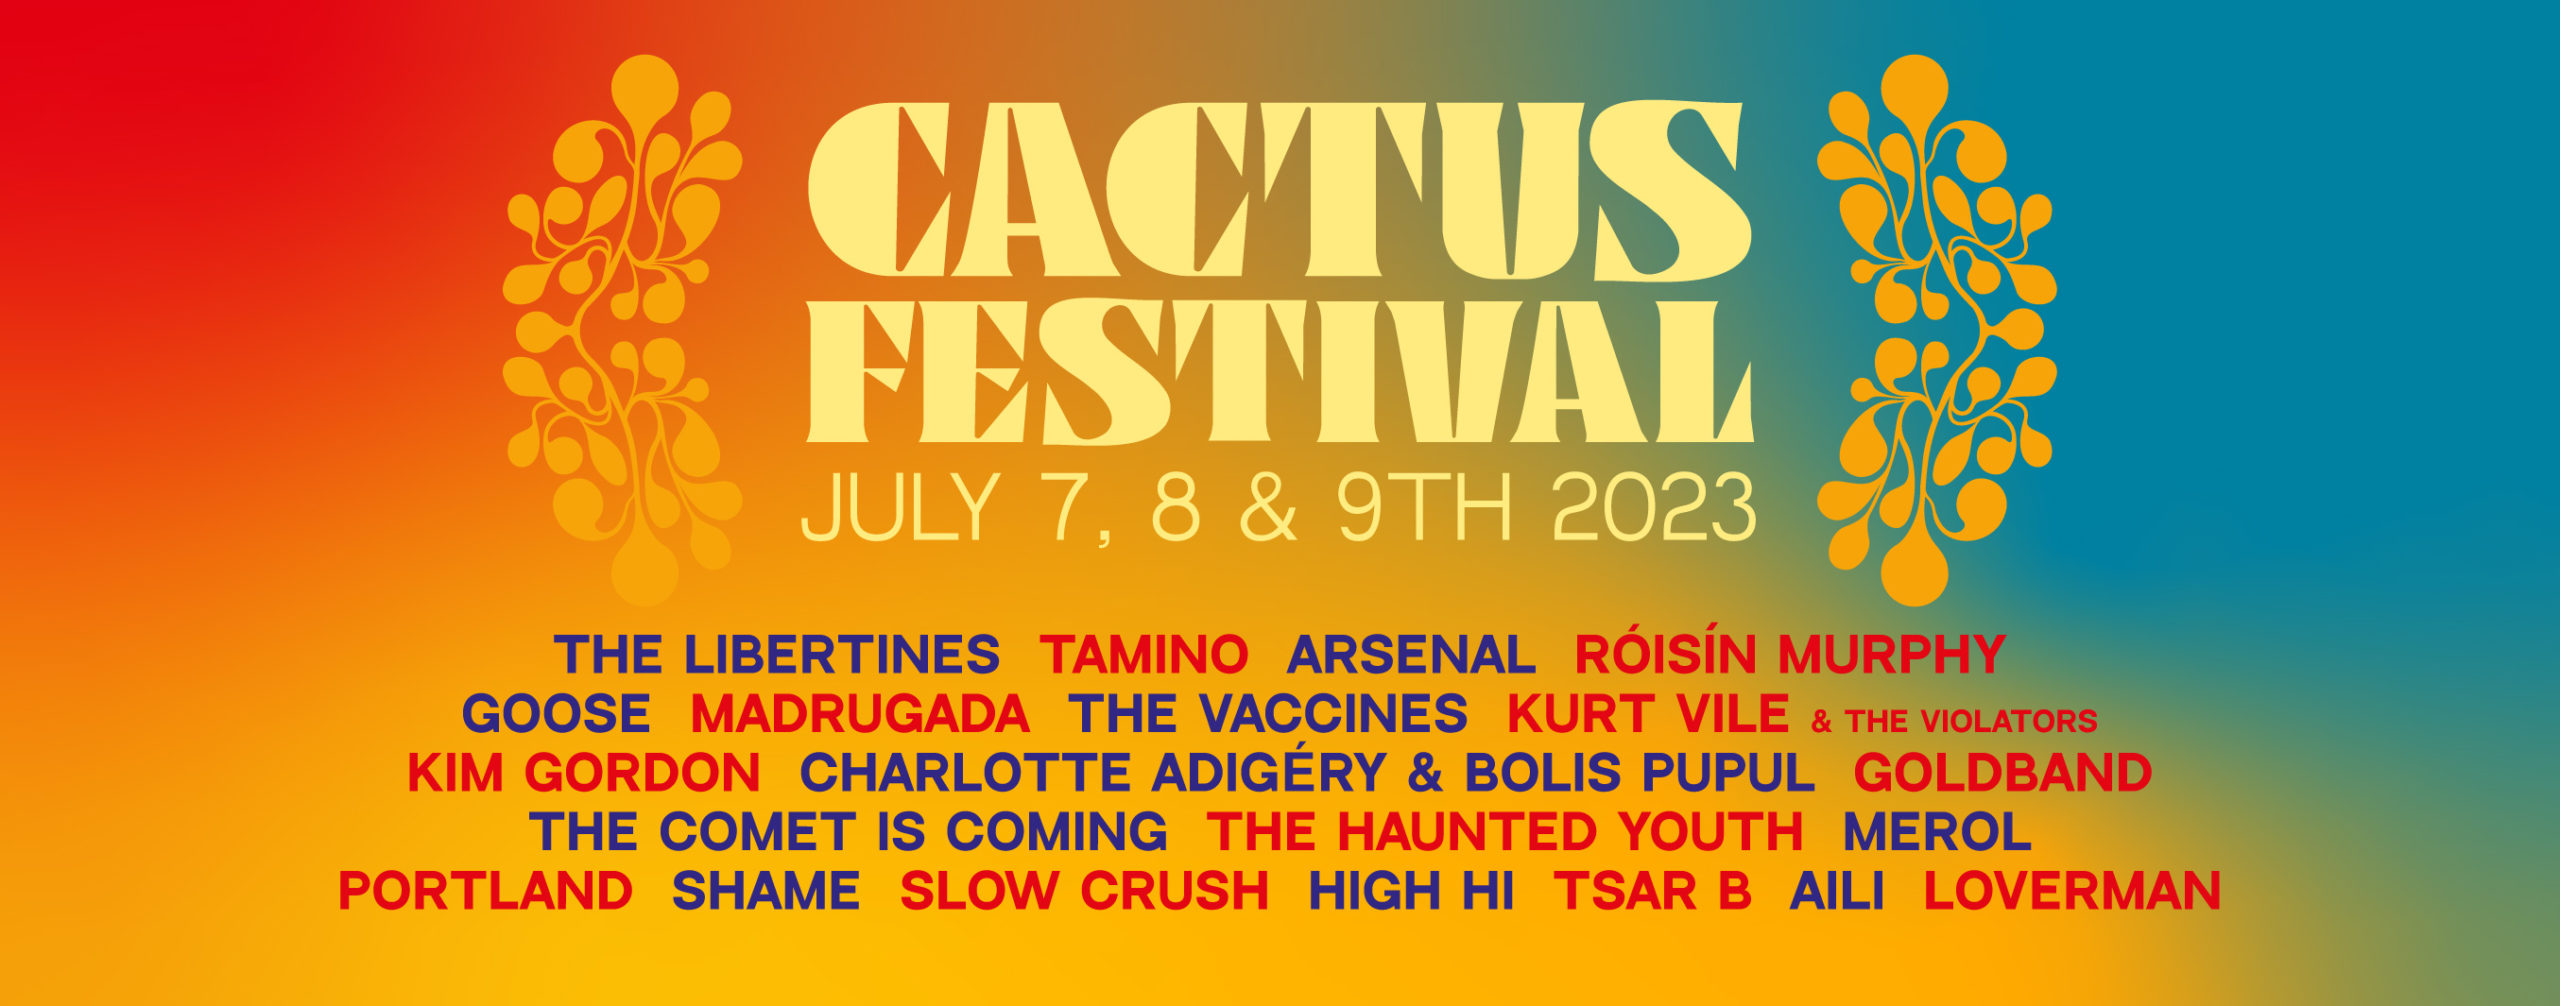 Cactus Festival en 2023 les dates, la programmation, et les tarifs